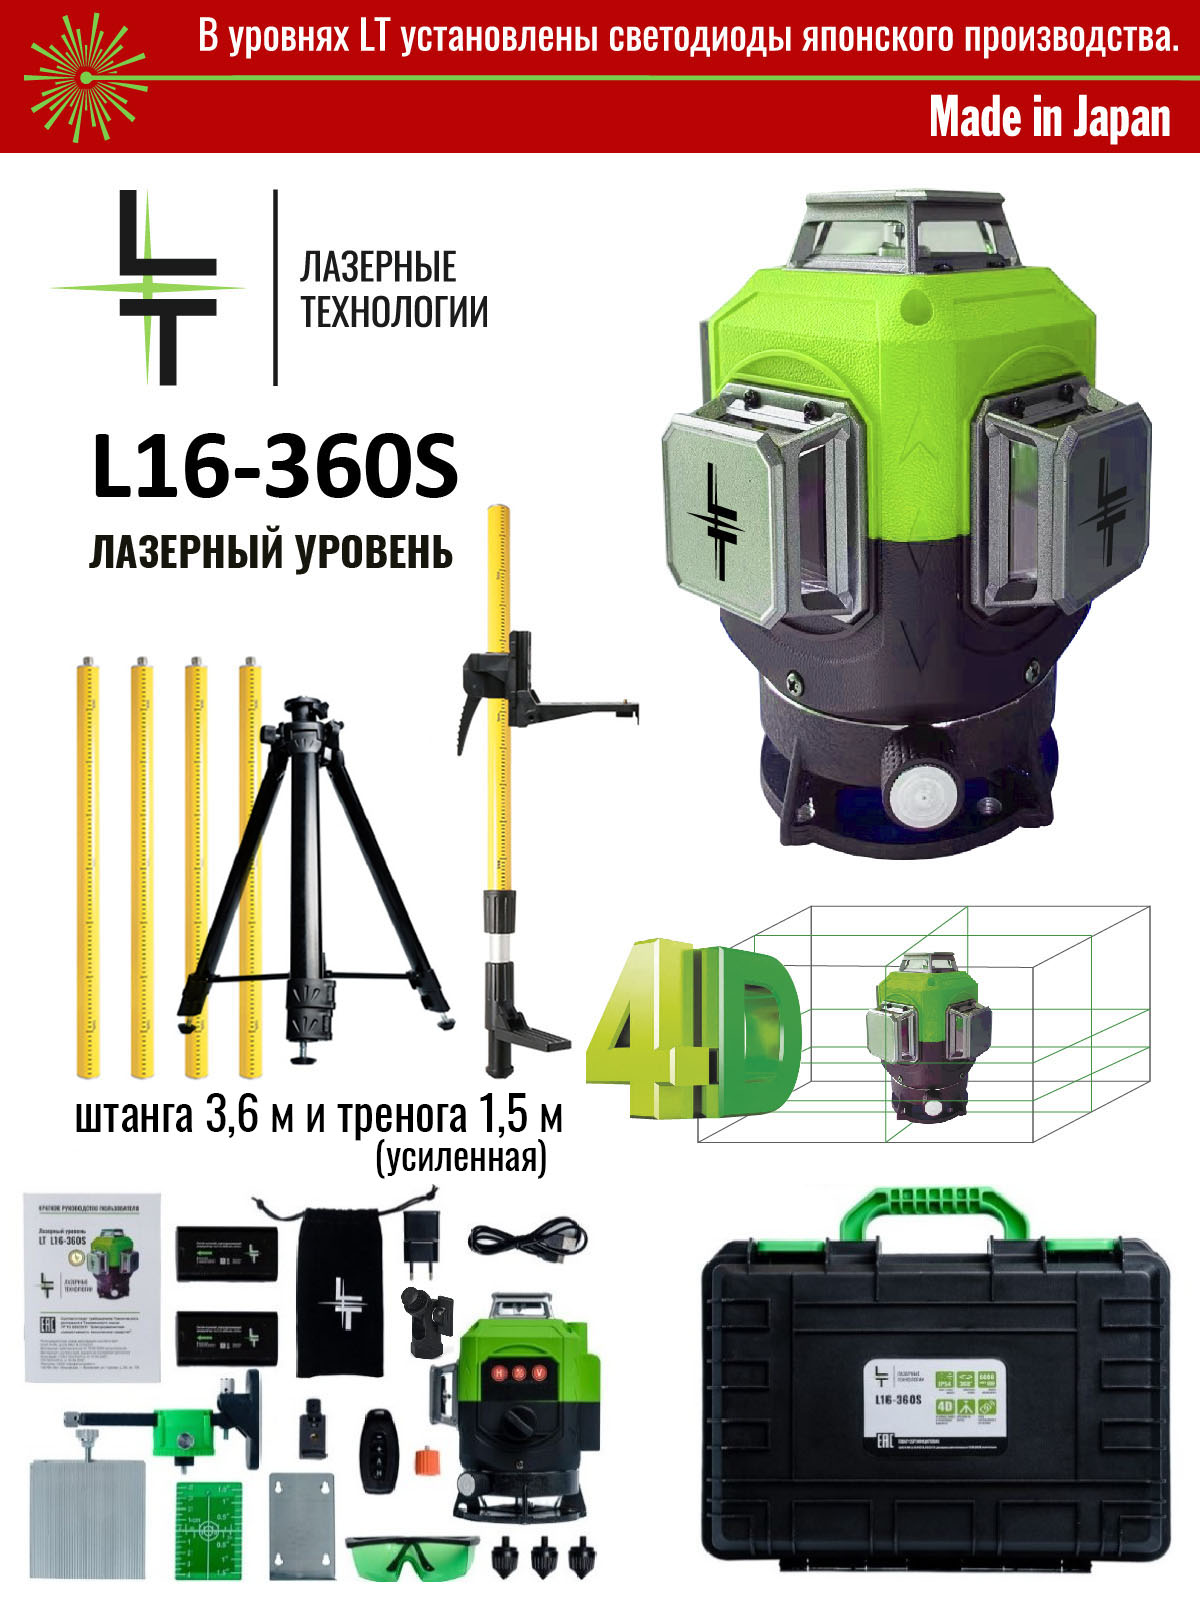 Профессиональный лазерный уровень LT 4D 16 линий серии S + Штатив 3.6м + Тренога 1.5м